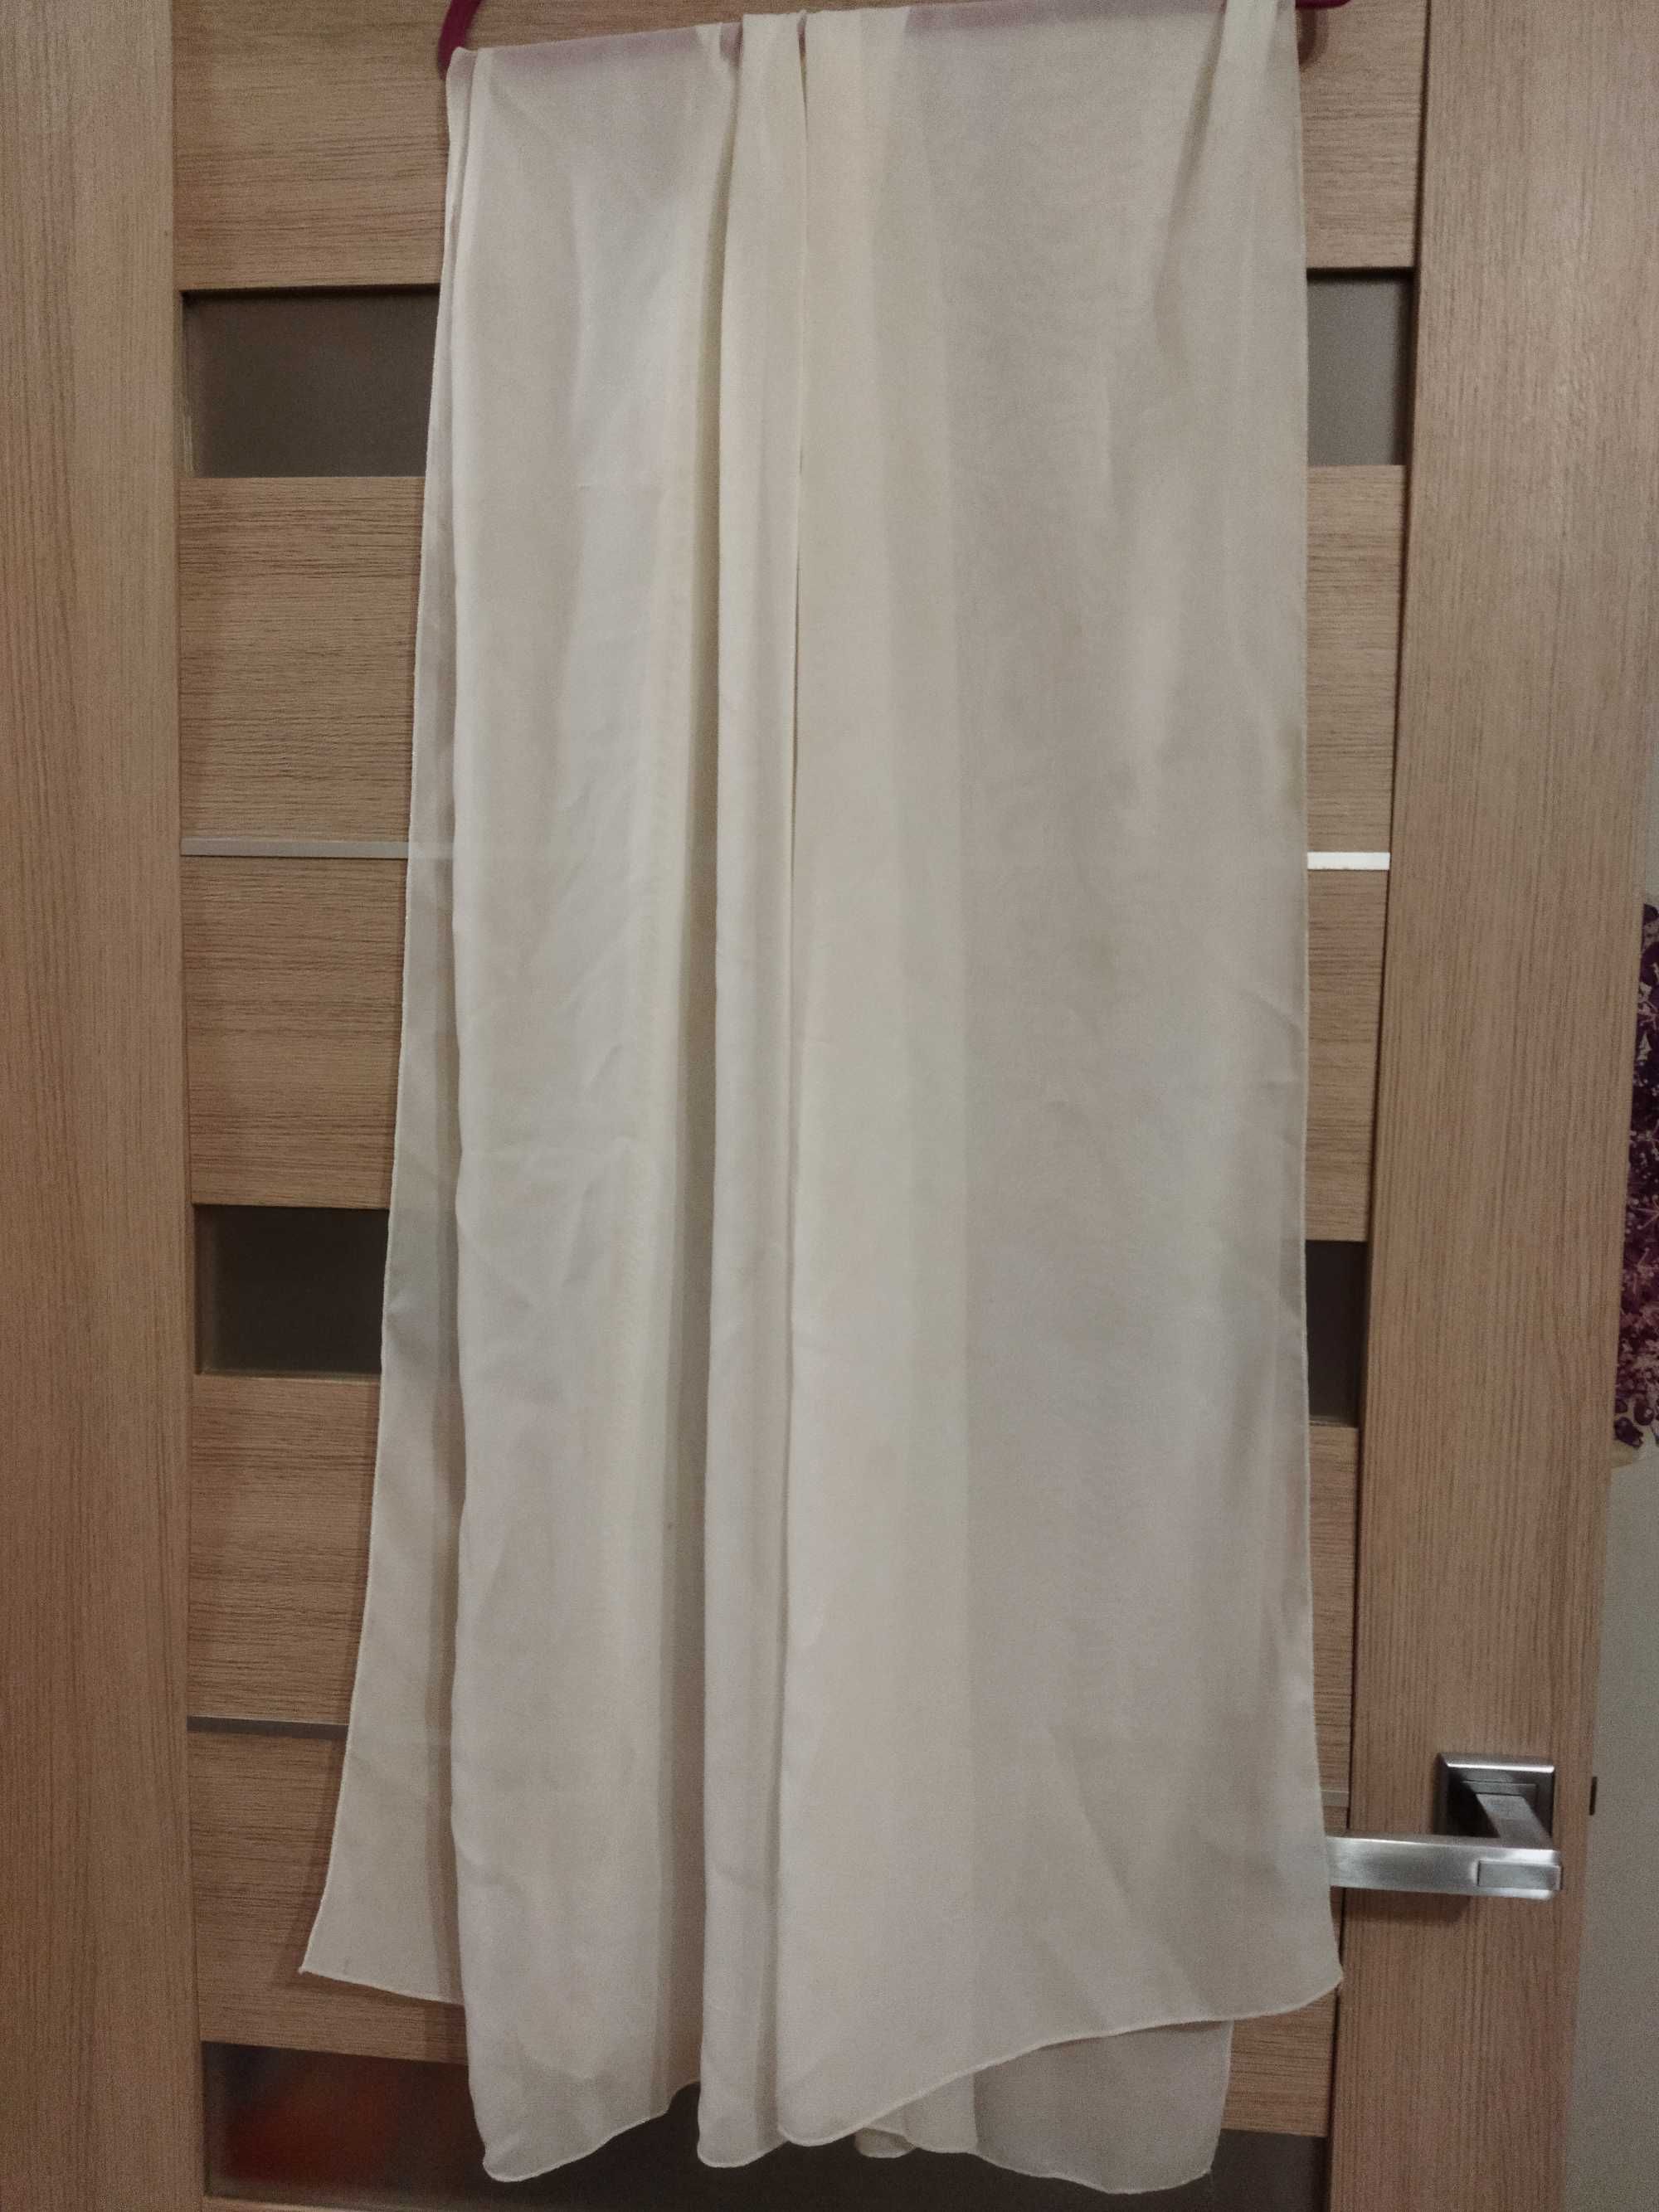 Плаття весільне, 50 розм., колір айворі, з шаллю, б/у. 3000грн.